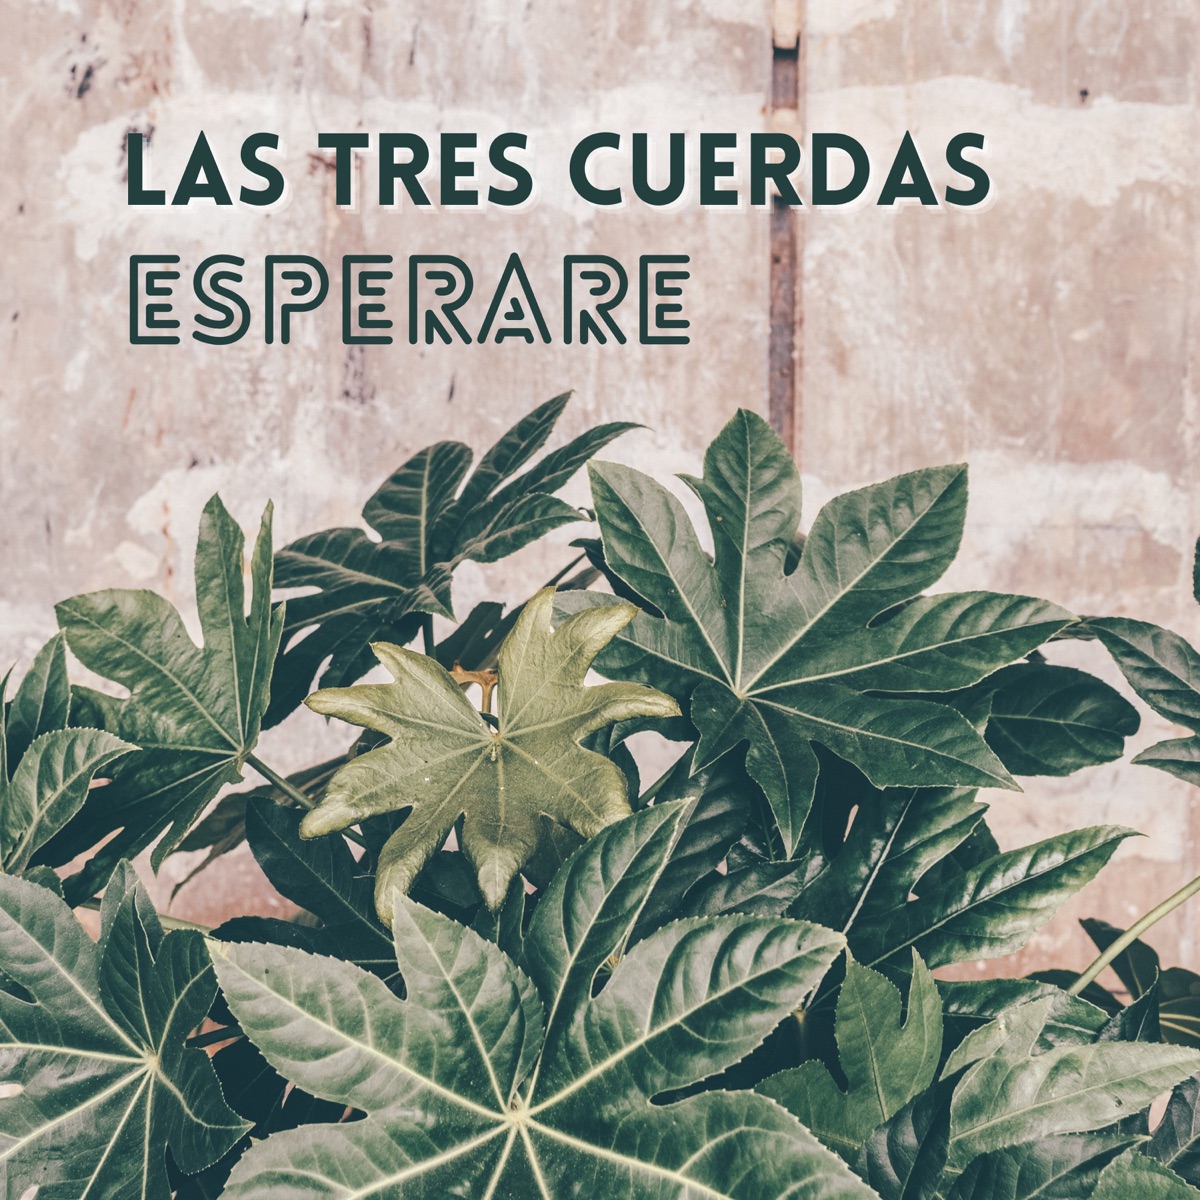 Esperare - Single - Album by Las Tres Cuerdas - Apple Music